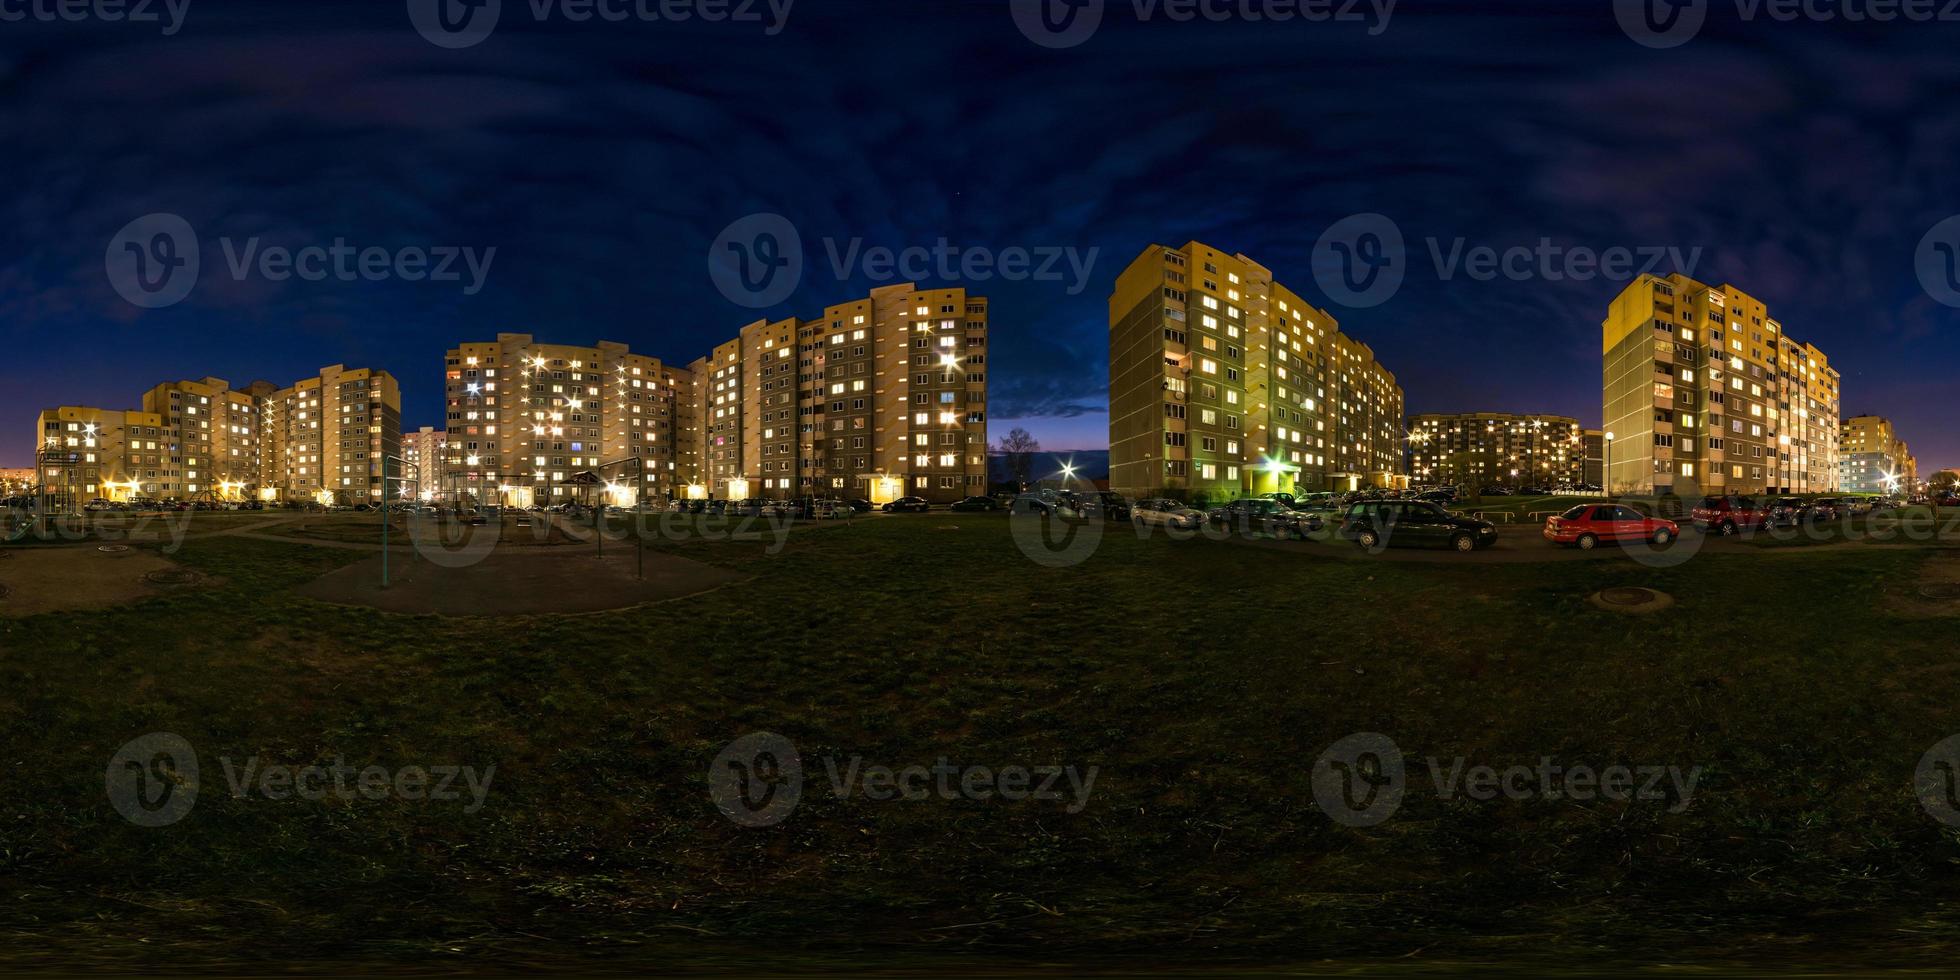 panorama de nuit hdri sphérique complet sans soudure angle de vue à 360 degrés lumière dans les fenêtres de la zone de construction à plusieurs étages du quartier résidentiel de développement urbain en projection équirectangulaire, contenu ar vr photo